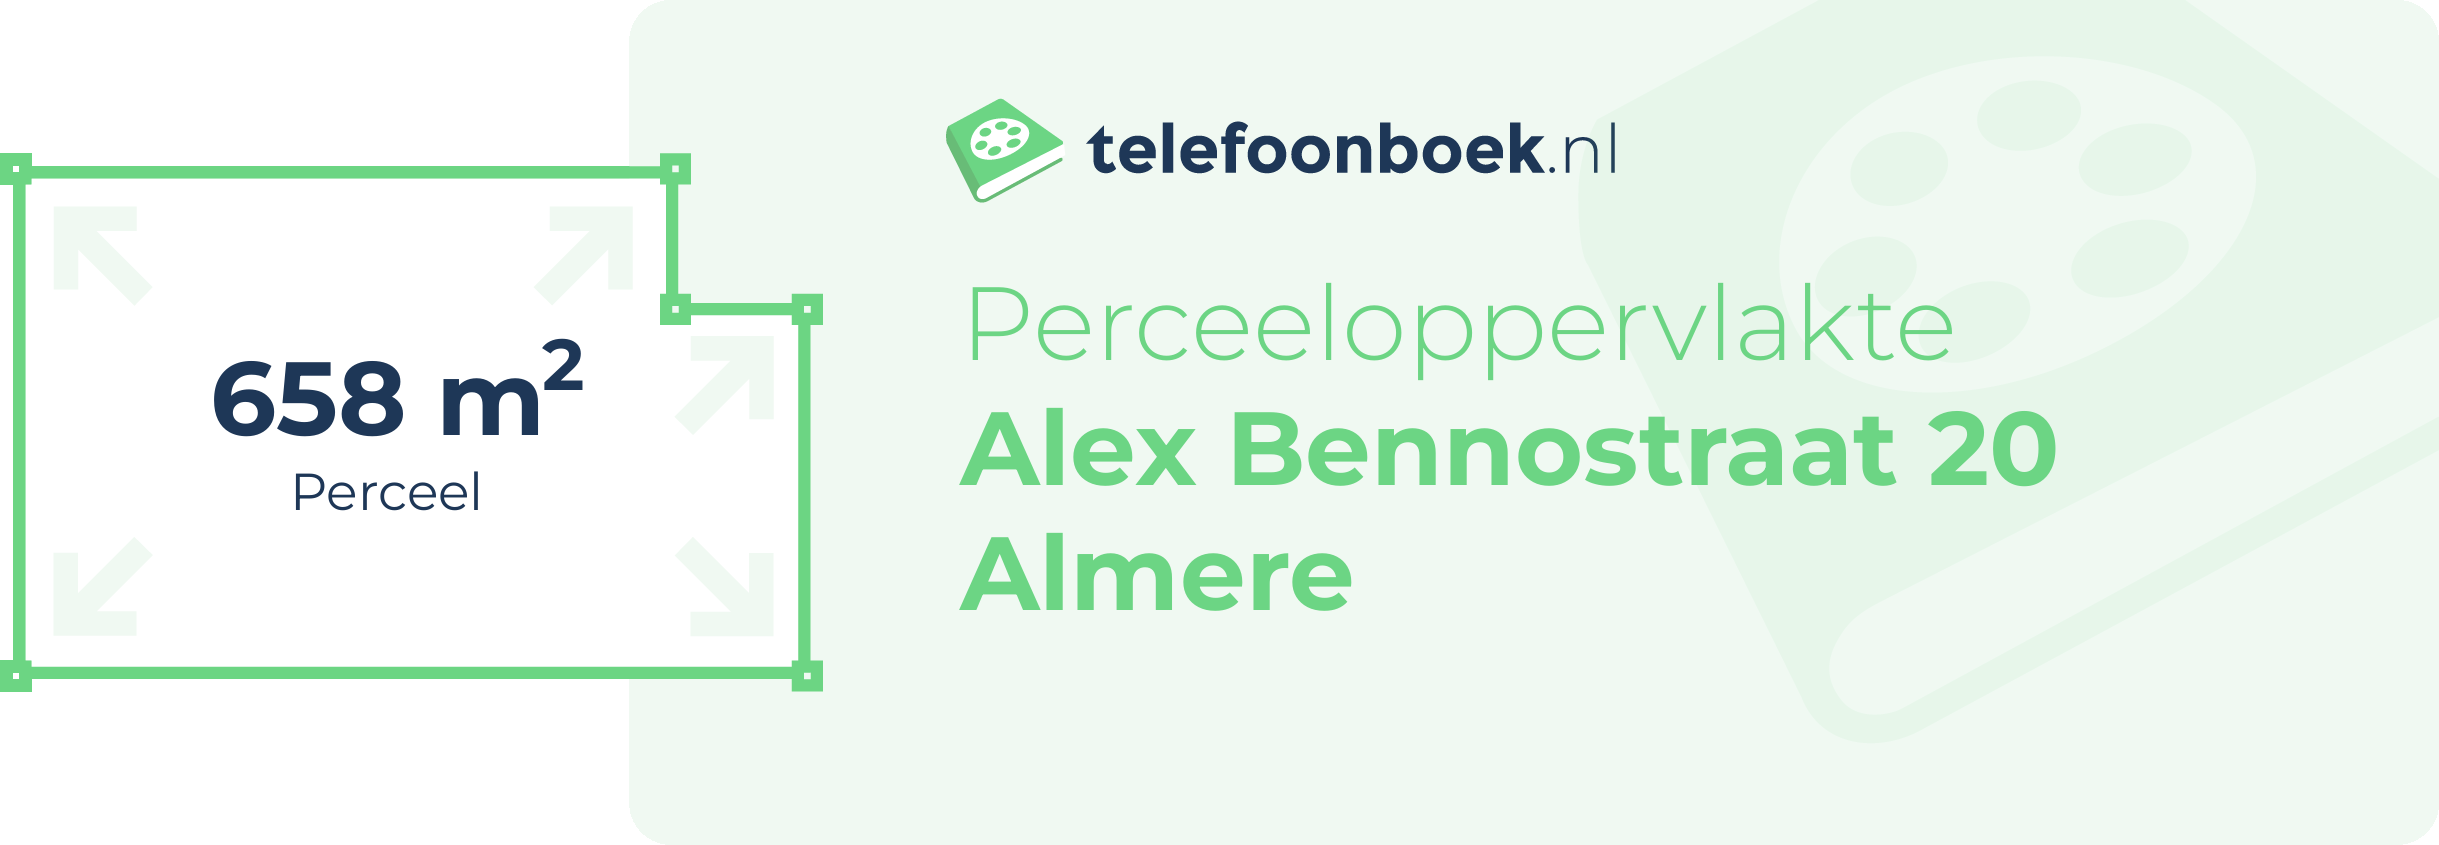 Perceeloppervlakte Alex Bennostraat 20 Almere